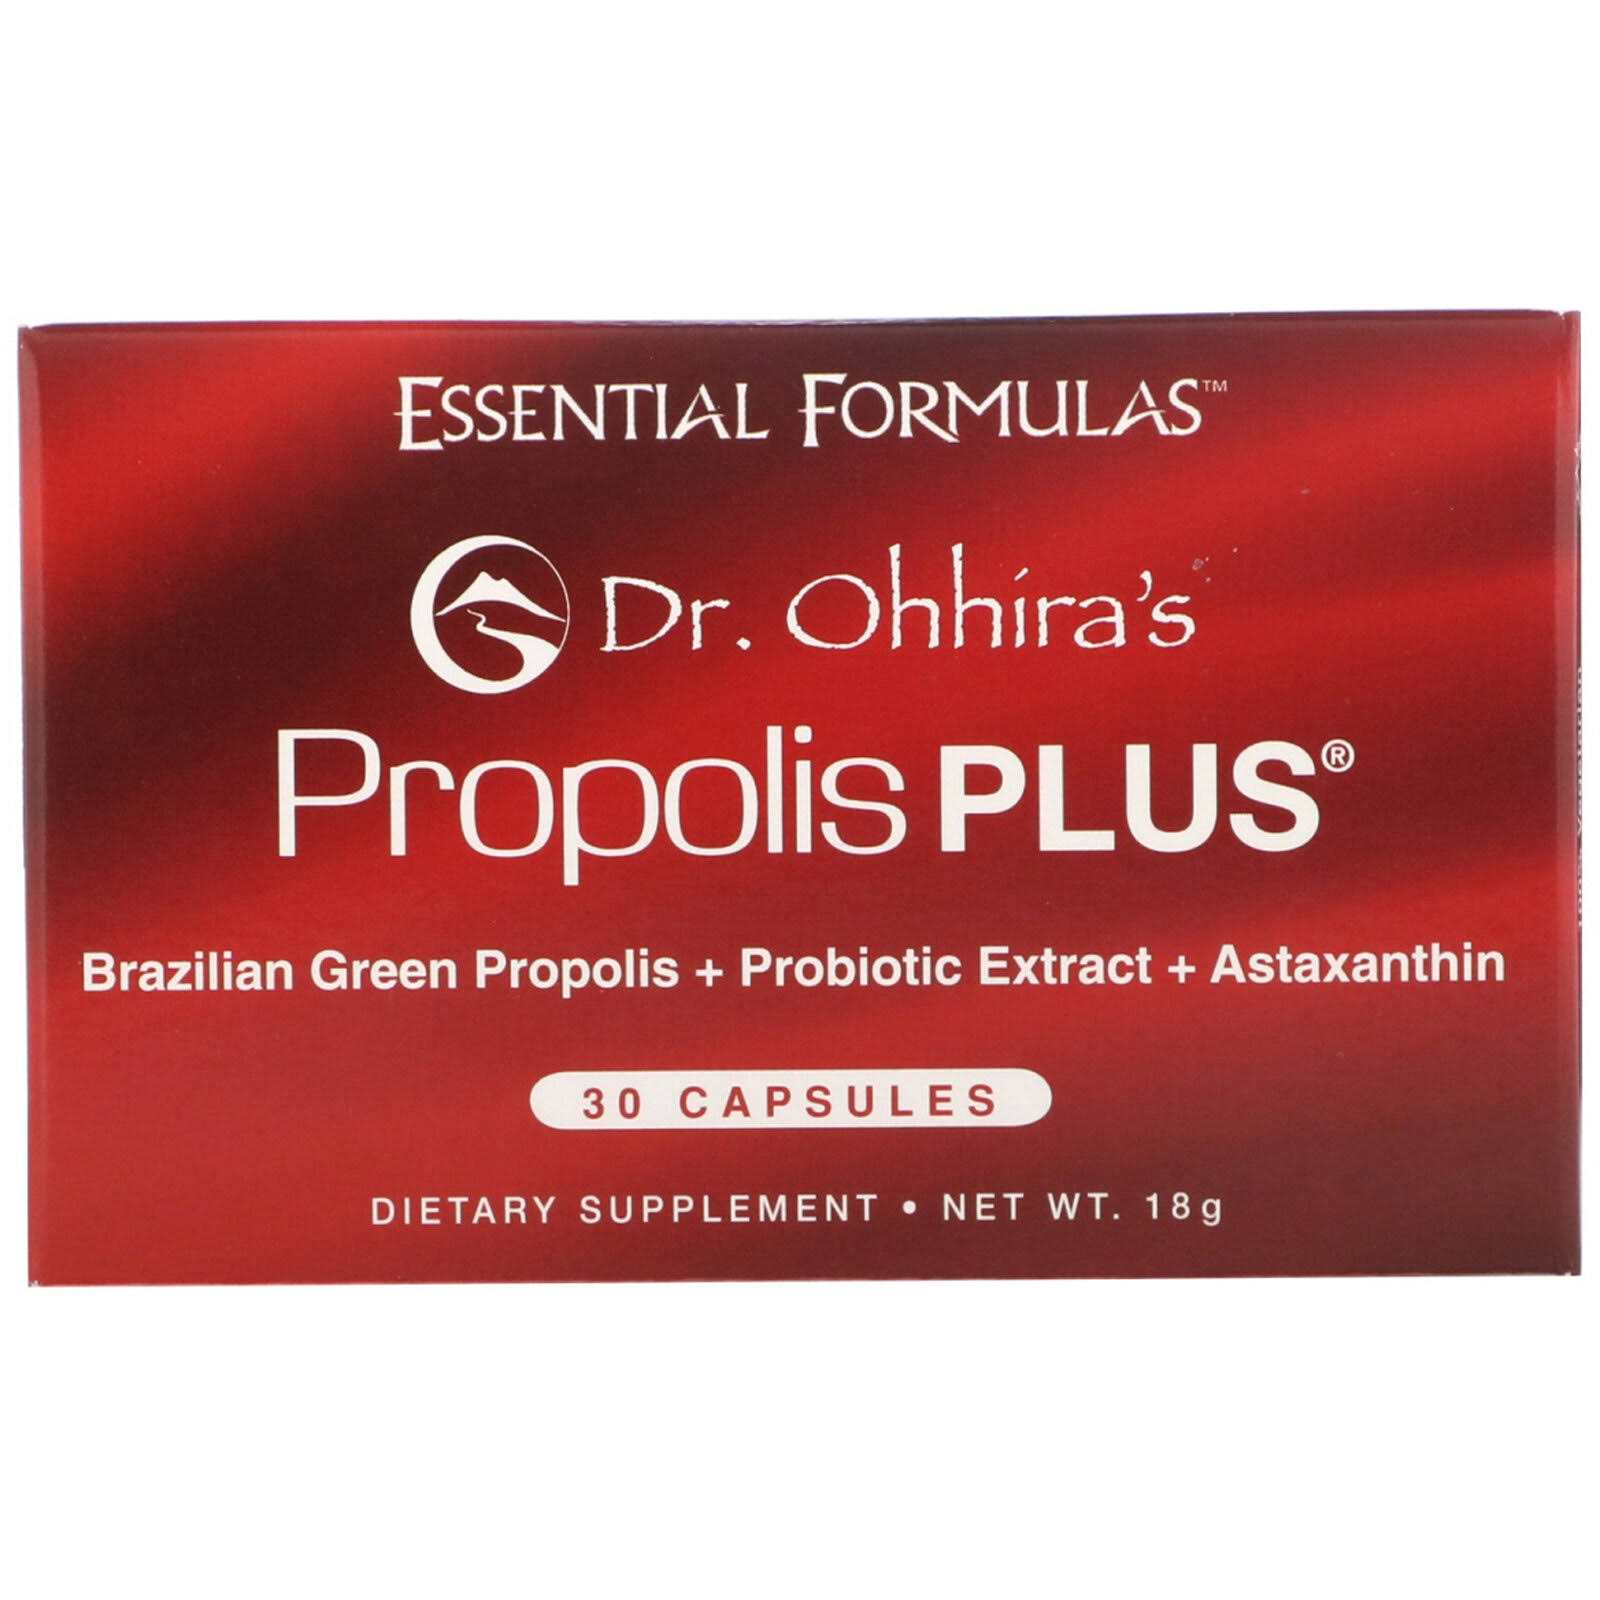 Essential Formulas Dr. Ohhira's Propolis Plus - 30 Capsules